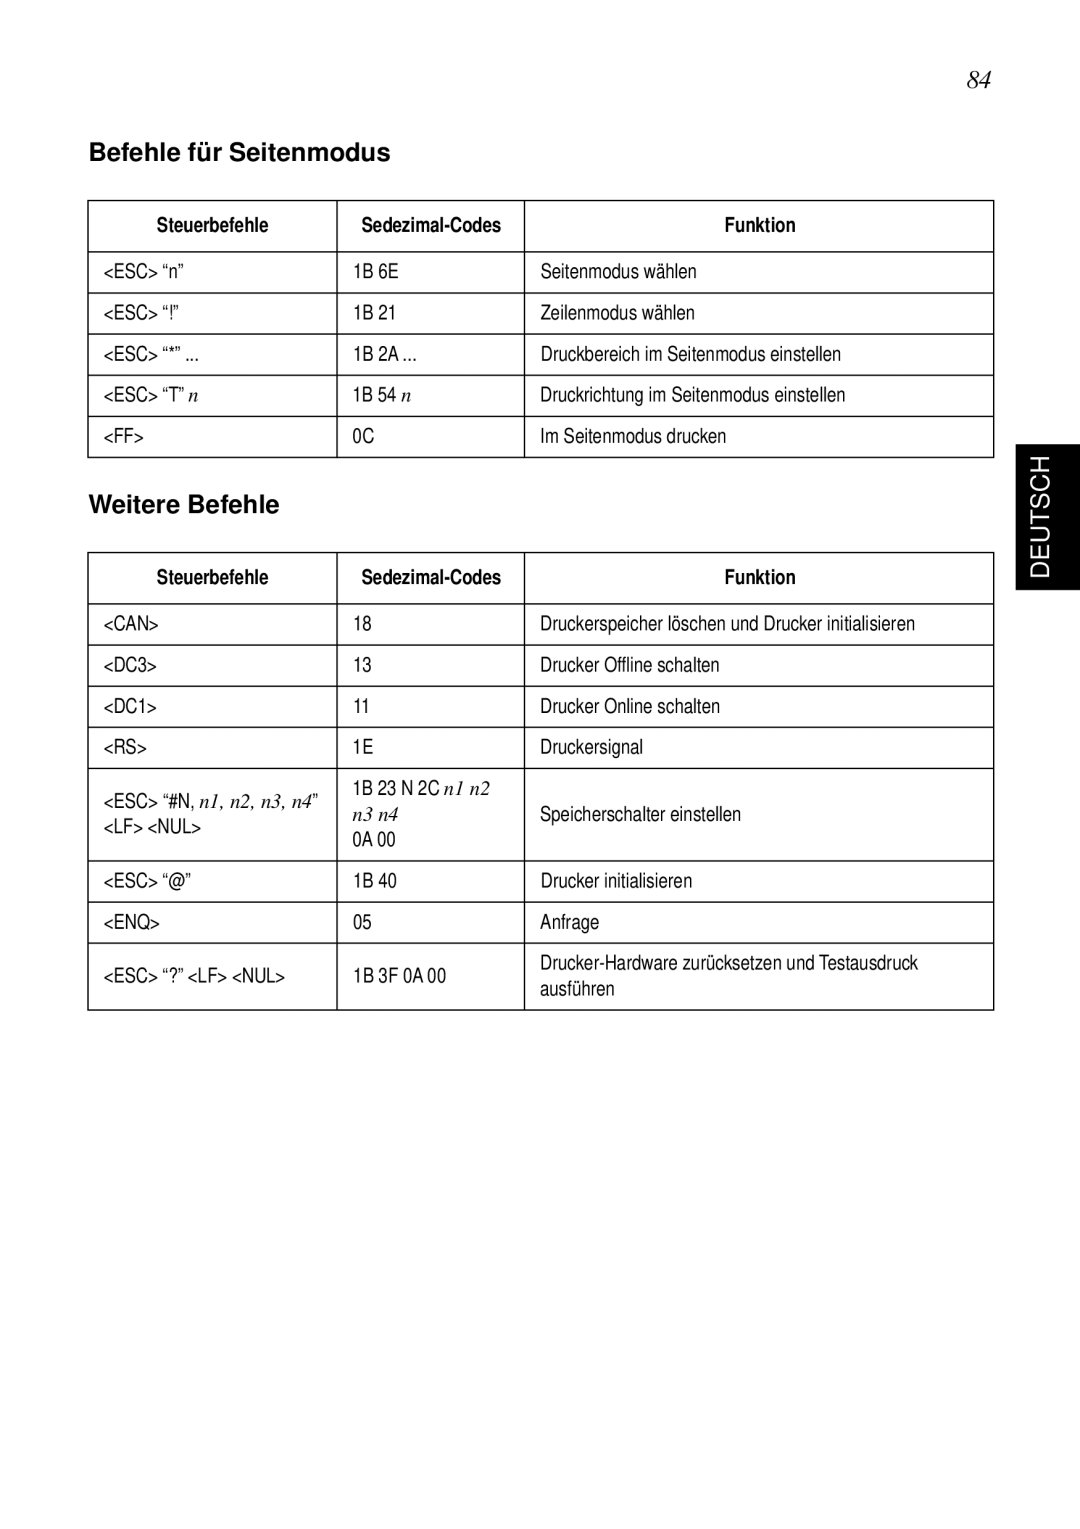 Star Micronics SP298 user manual Befehle für Seitenmodus, Weitere Befehle, Deutsch, n3 n4 